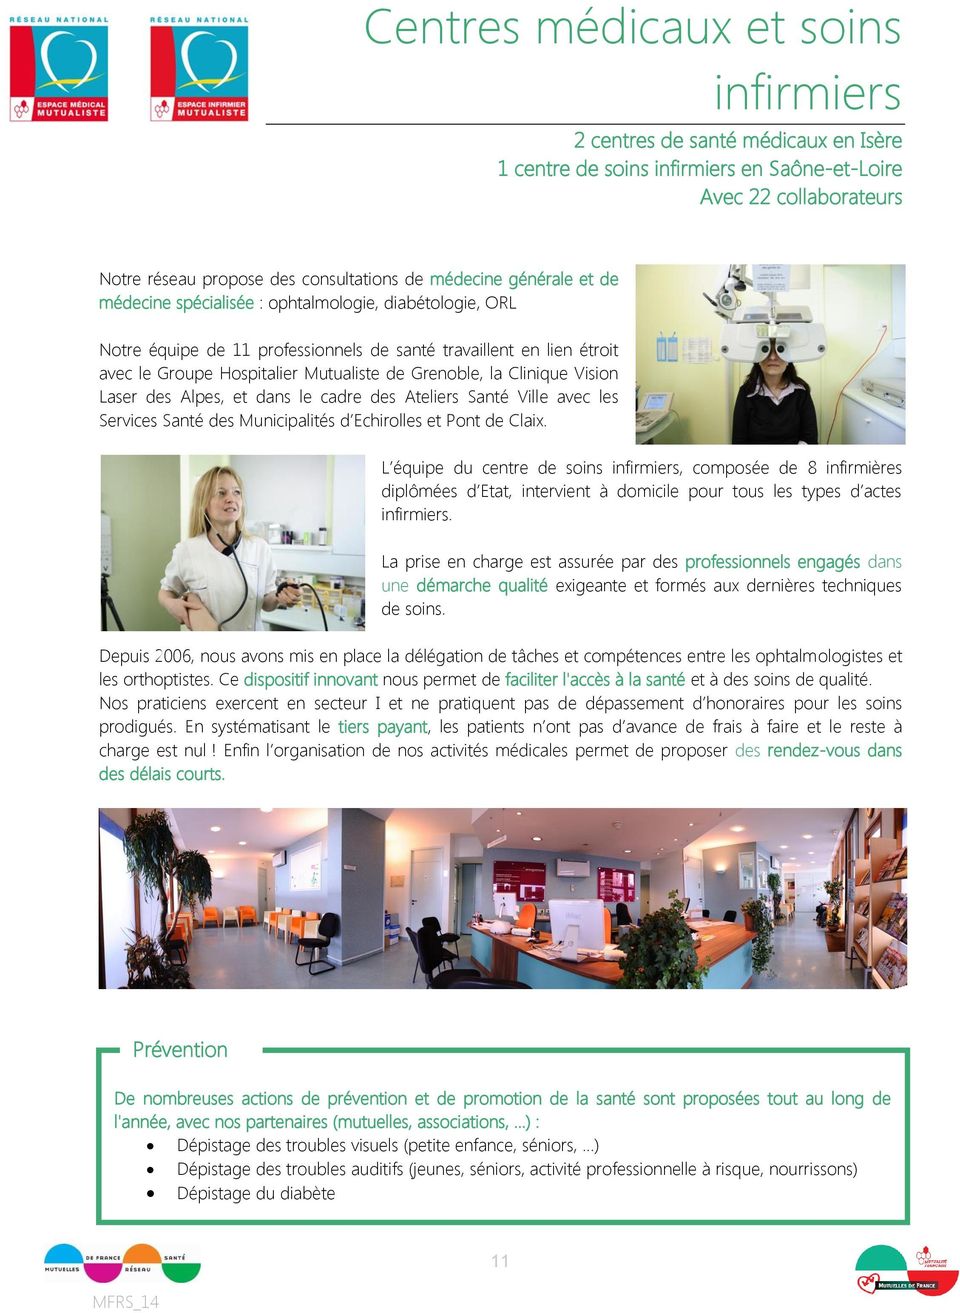 Clinique Vision Laser des Alpes, et dans le cadre des Ateliers Santé Ville avec les Services Santé des Municipalités d Echirolles et Pont de Claix.